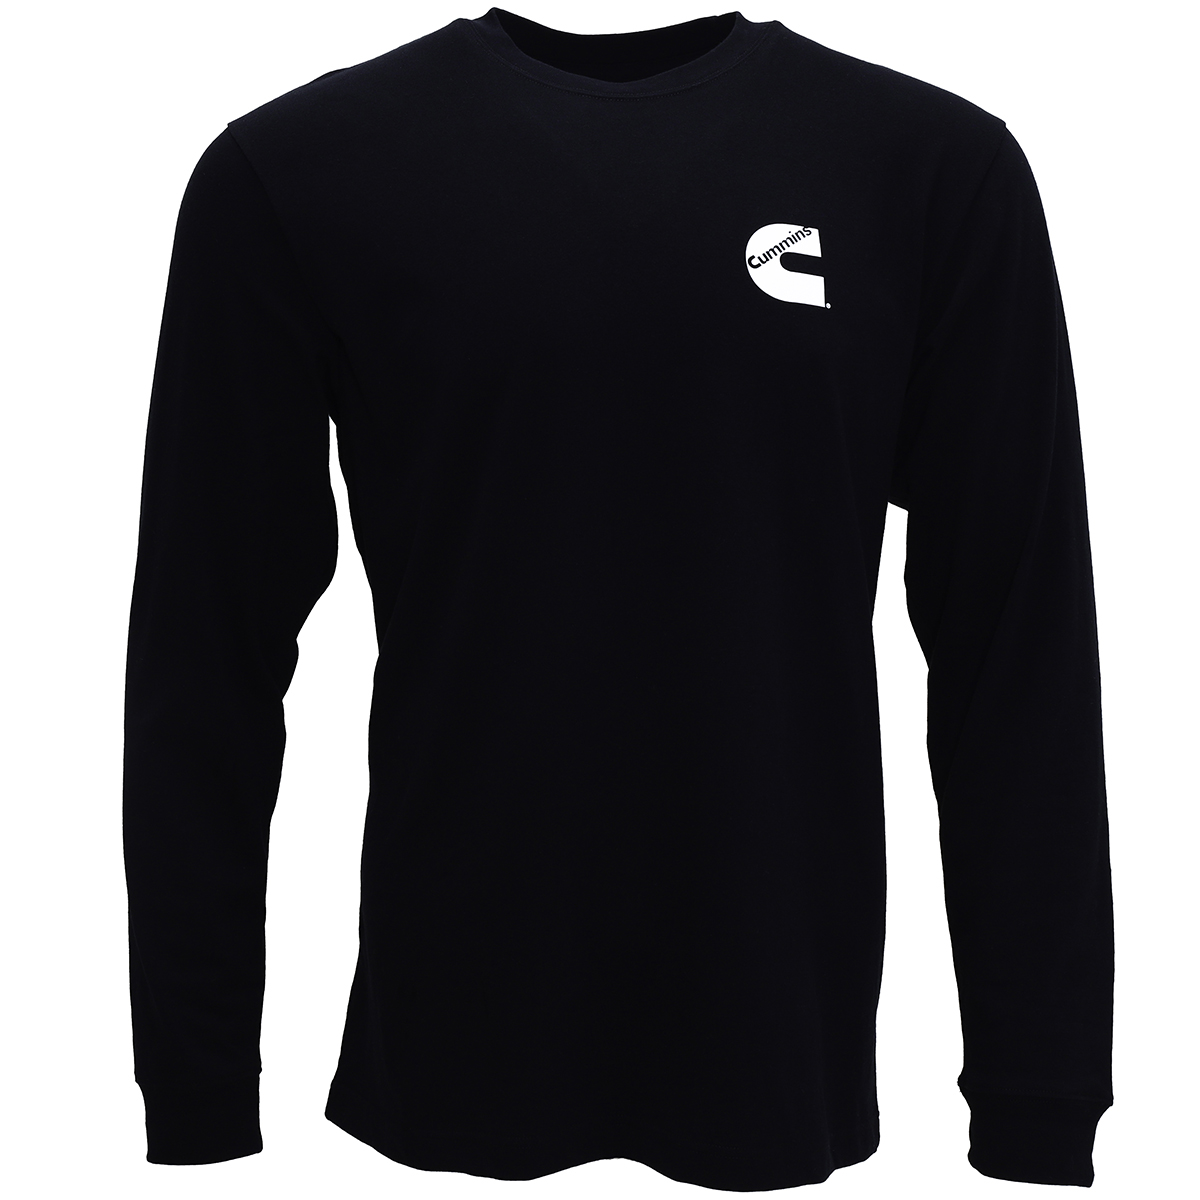 Cummins Unisex Long Sleeve T-shirt Black All Cotton Tee CMN4780  - 3XL